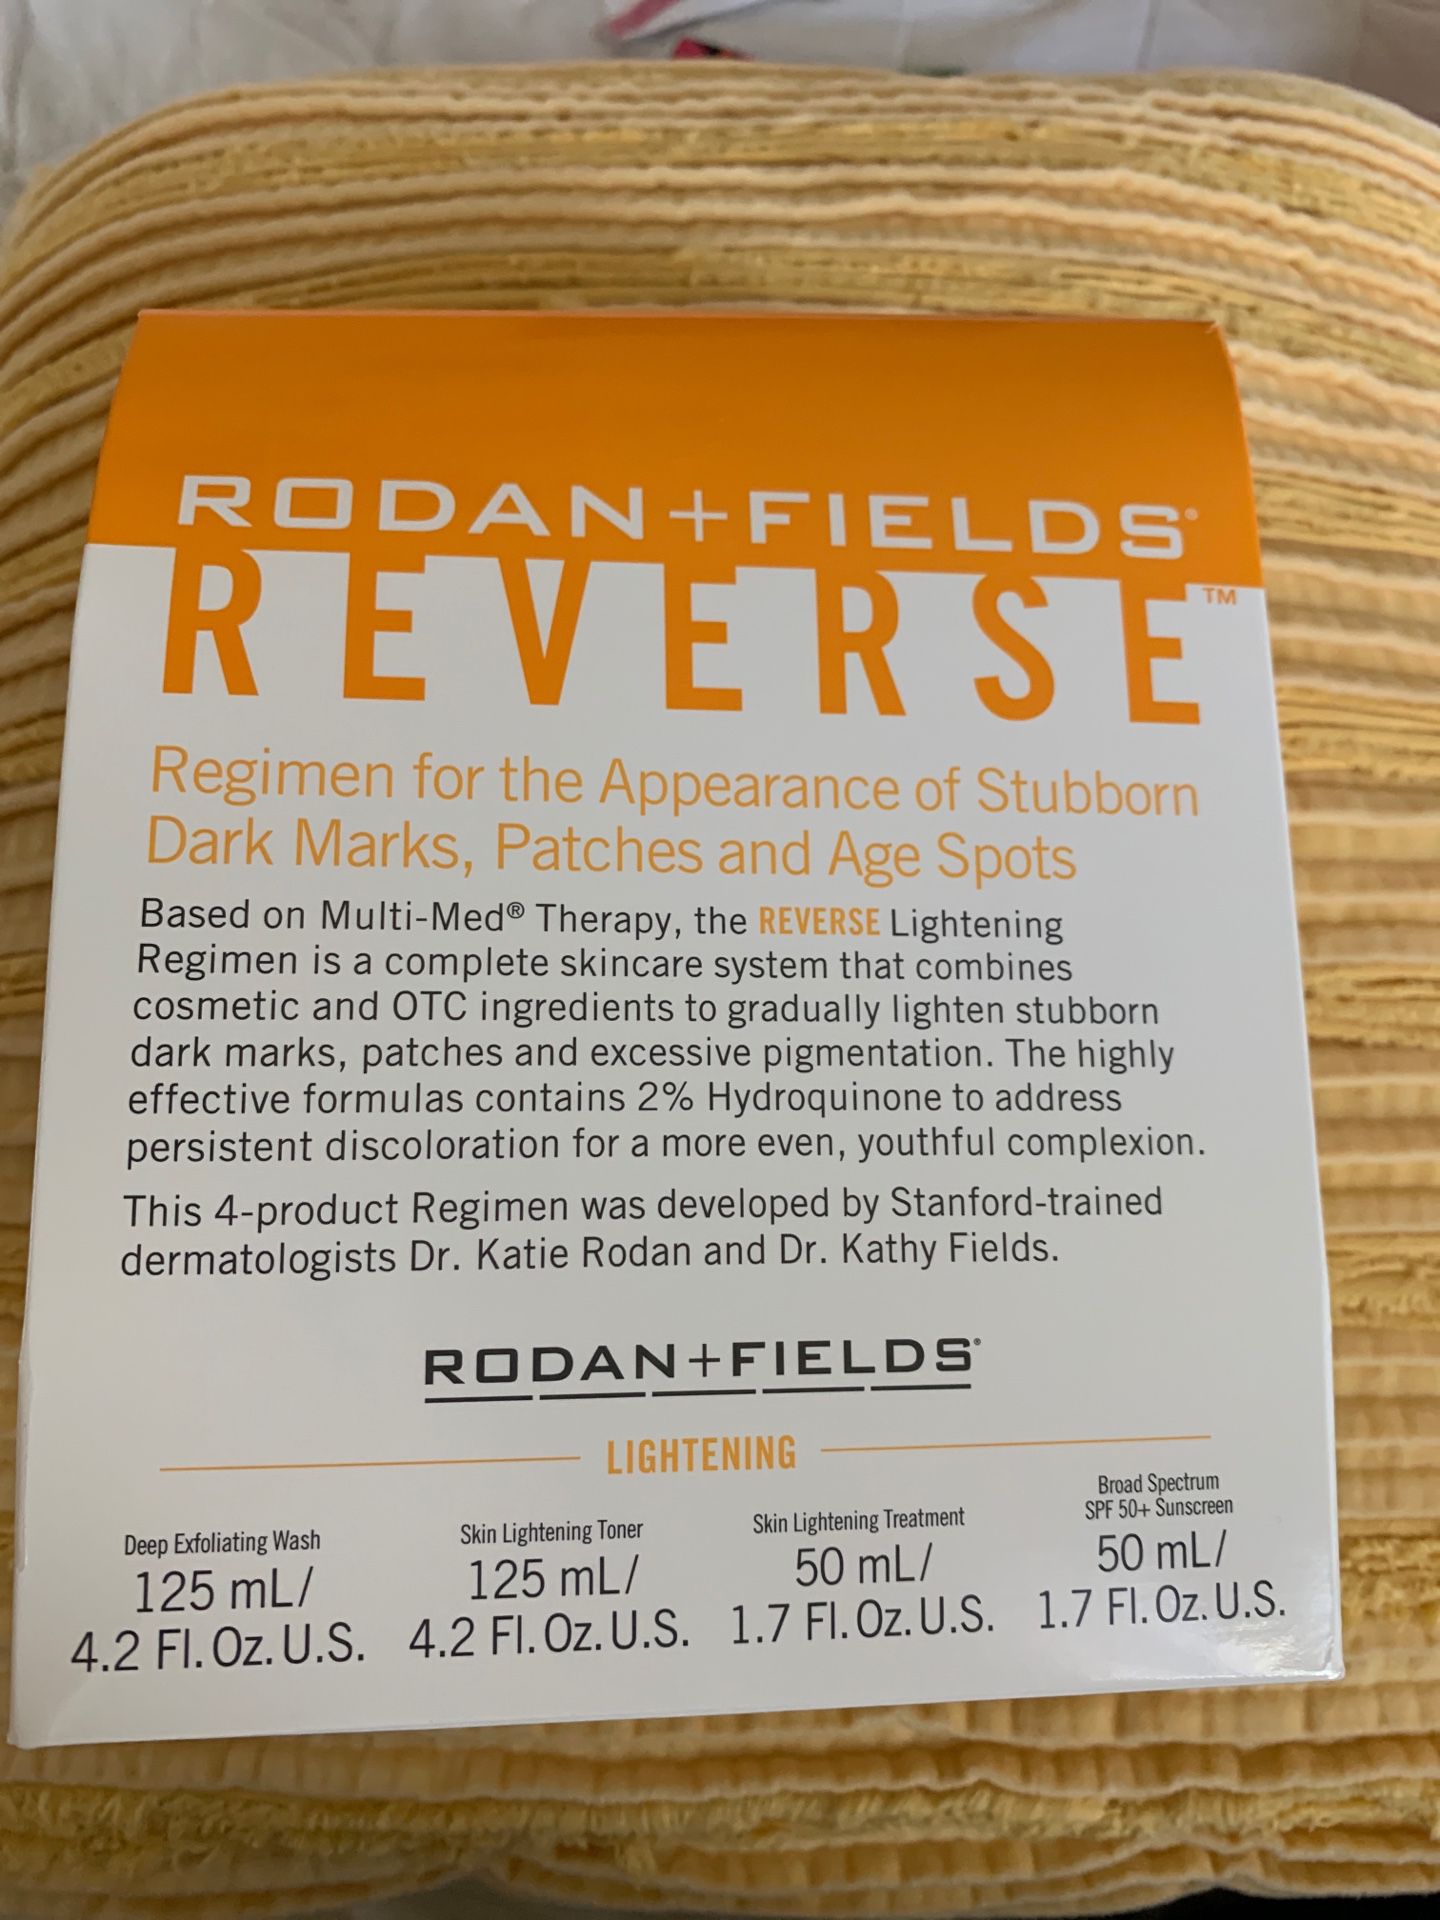 Rodan + Fields REVERSE lightening regimen